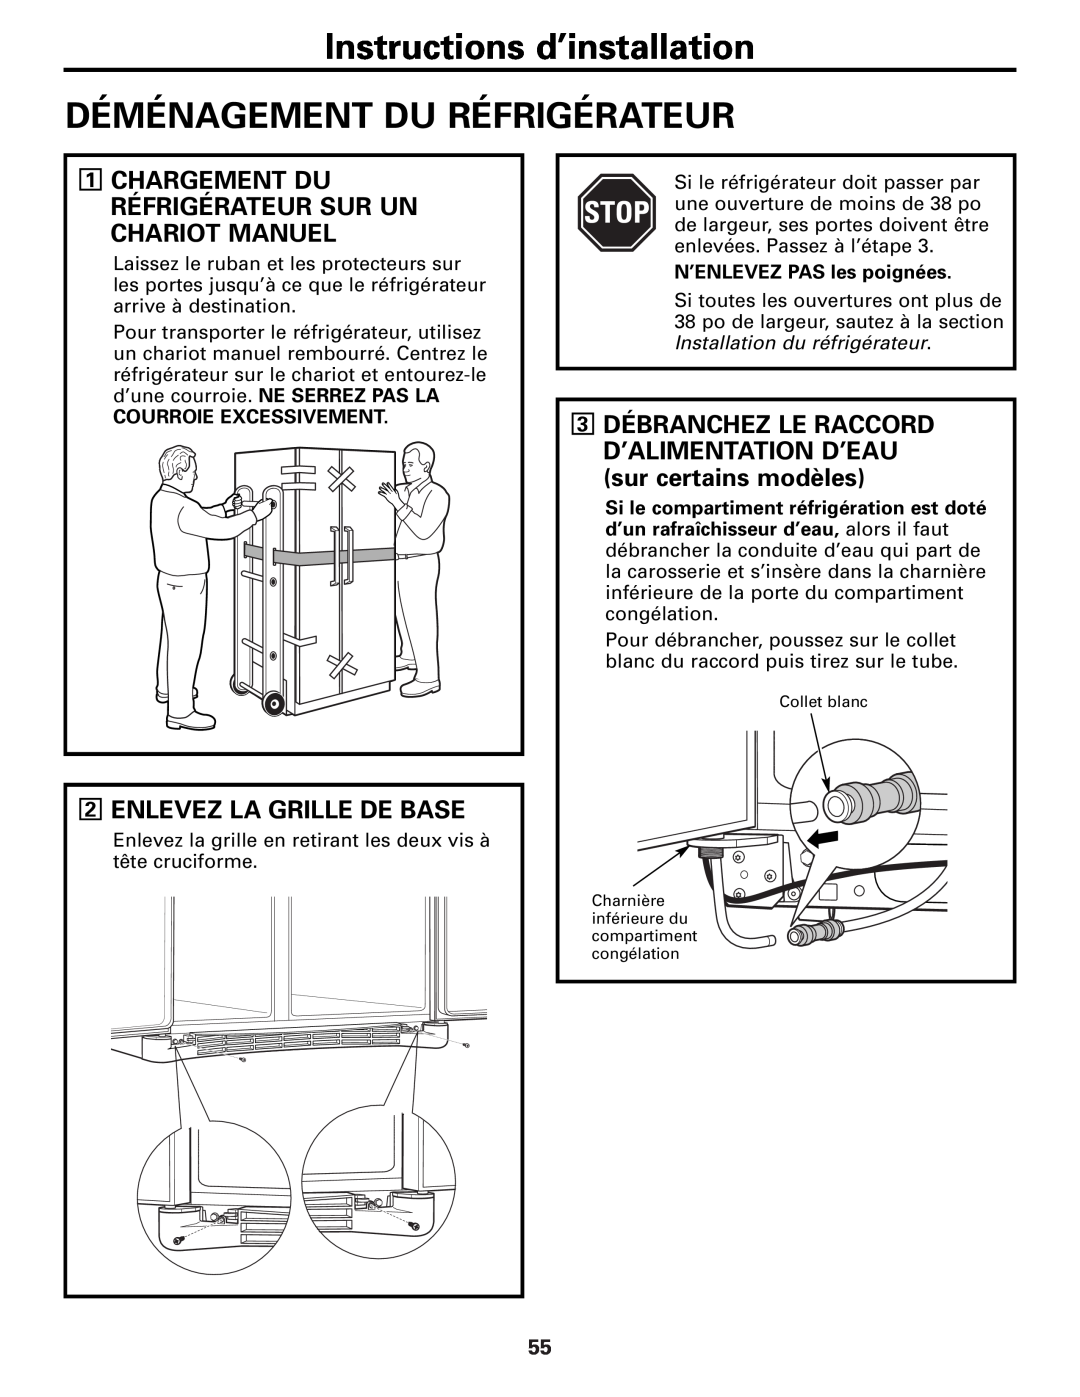 GE Monogram 23 Instructions d’installation, Déménagement Du Réfrigérateur, 2ENLEVEZ LA GRILLE DE BASE 